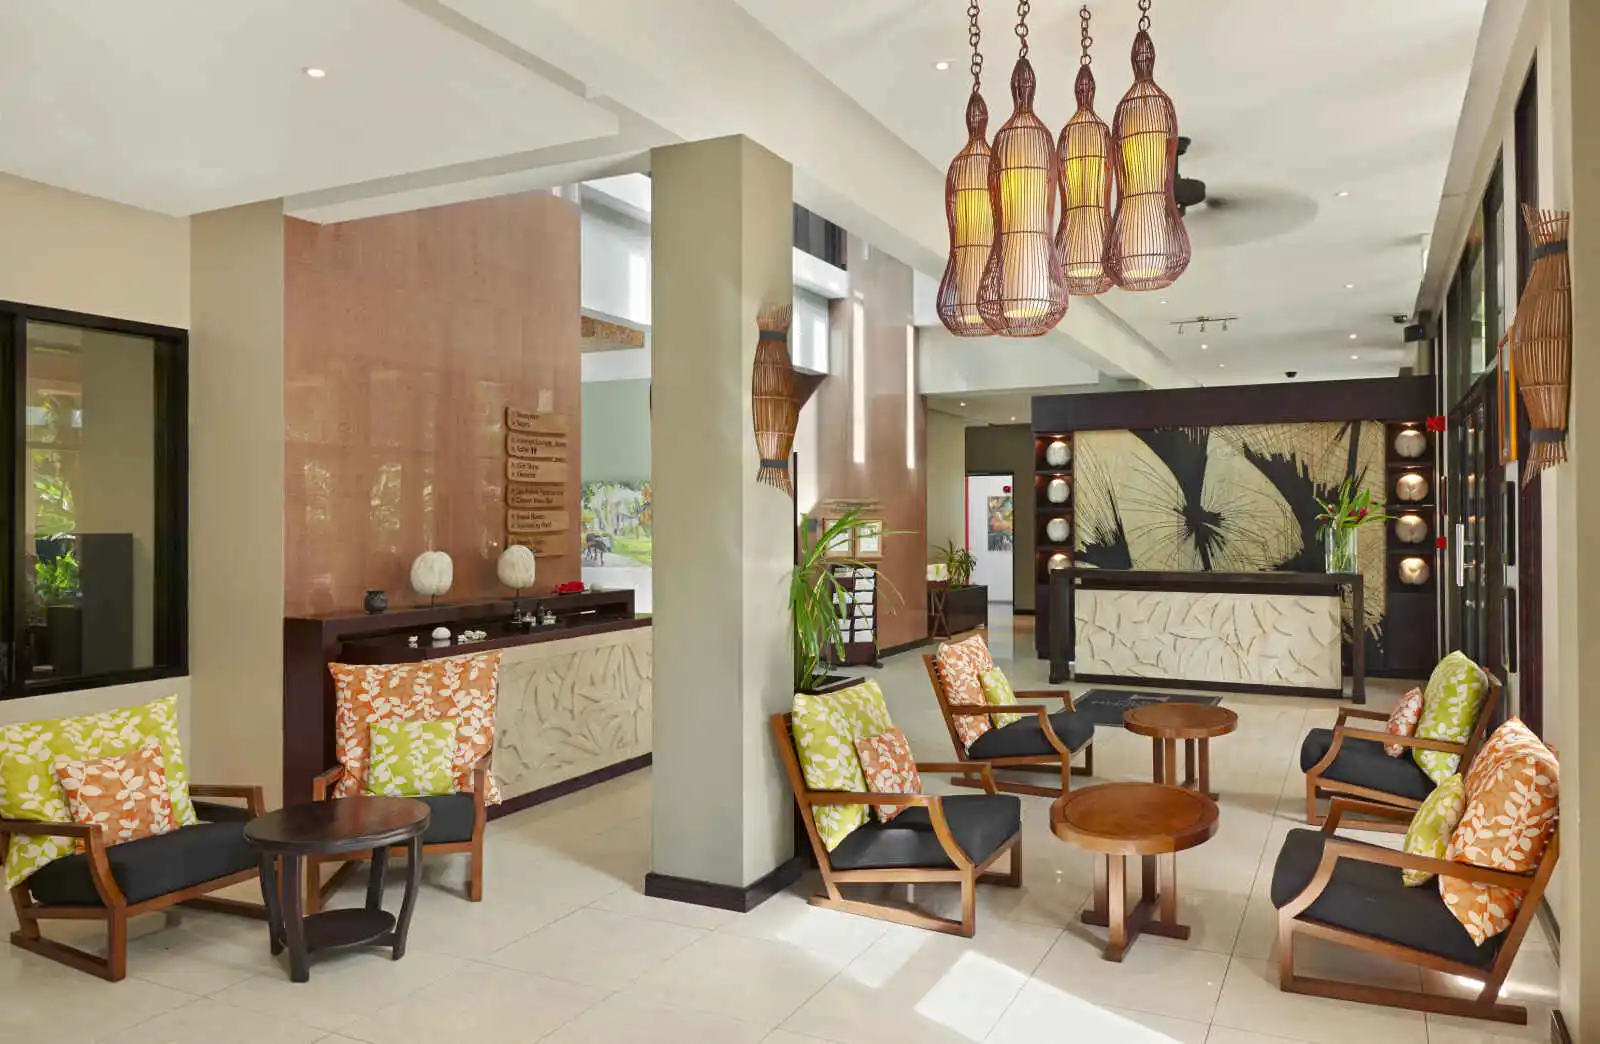 Réception de l'hôtel, DoubleTree by Hilton Seychelles Allamanda